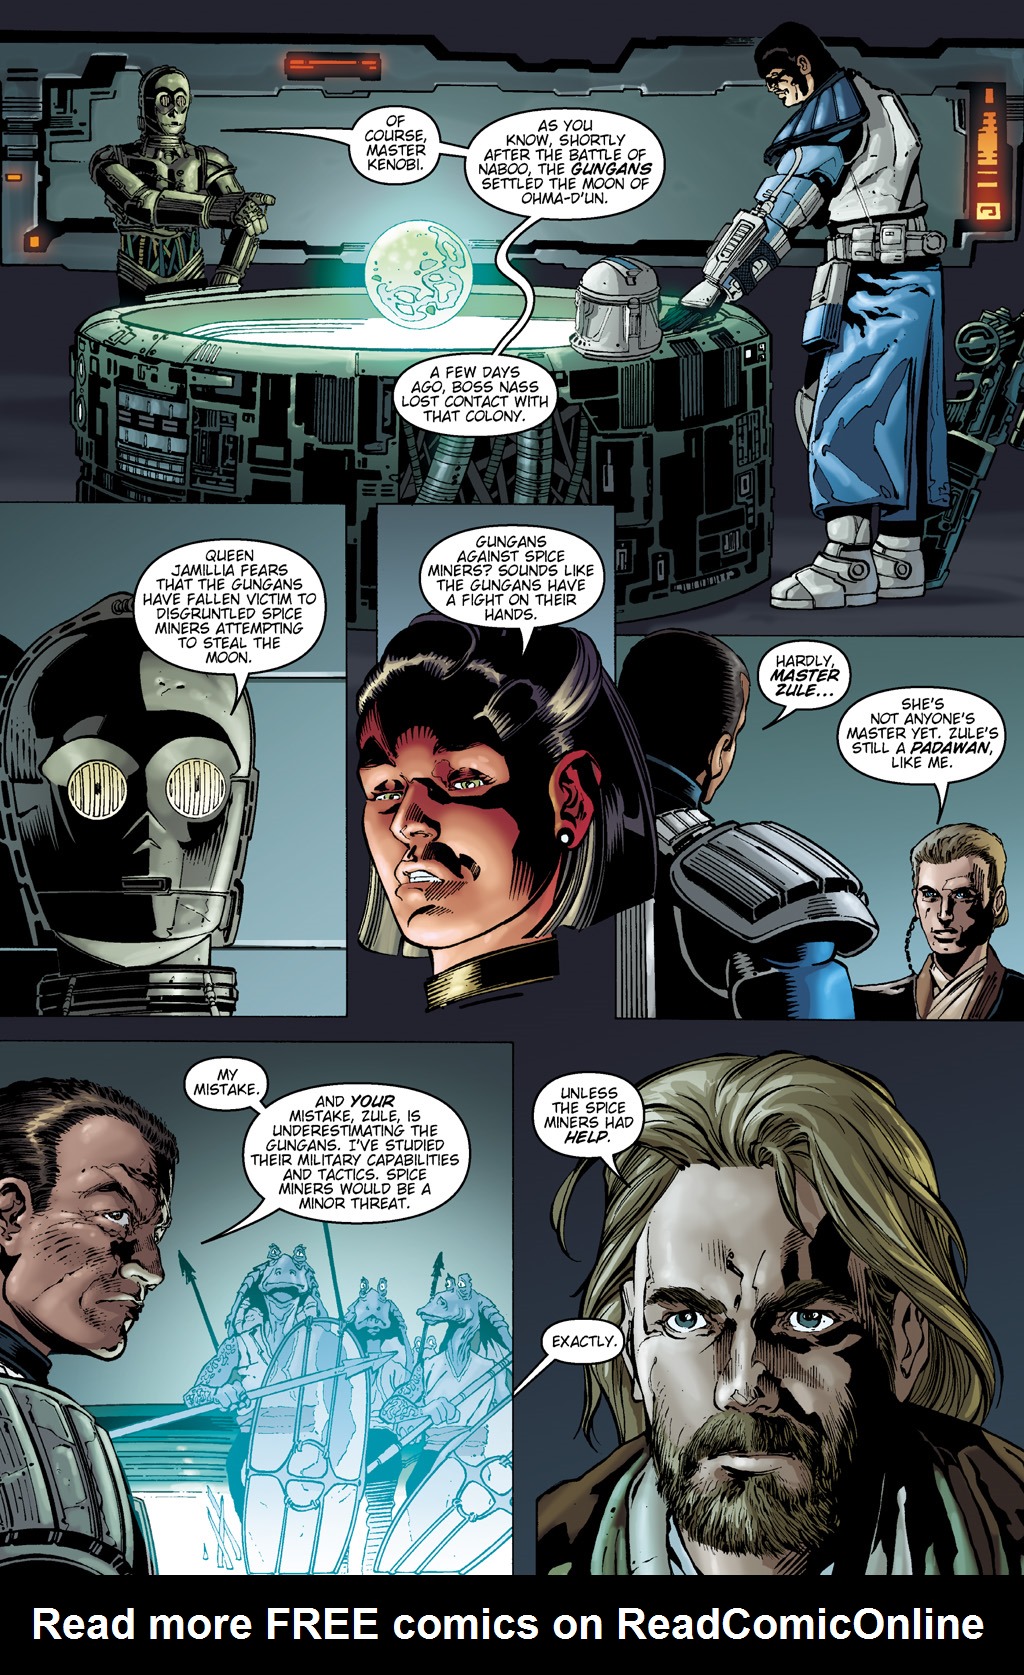 Read online Star Wars: Clone Wars comic -  Issue # TPB 2 - 10